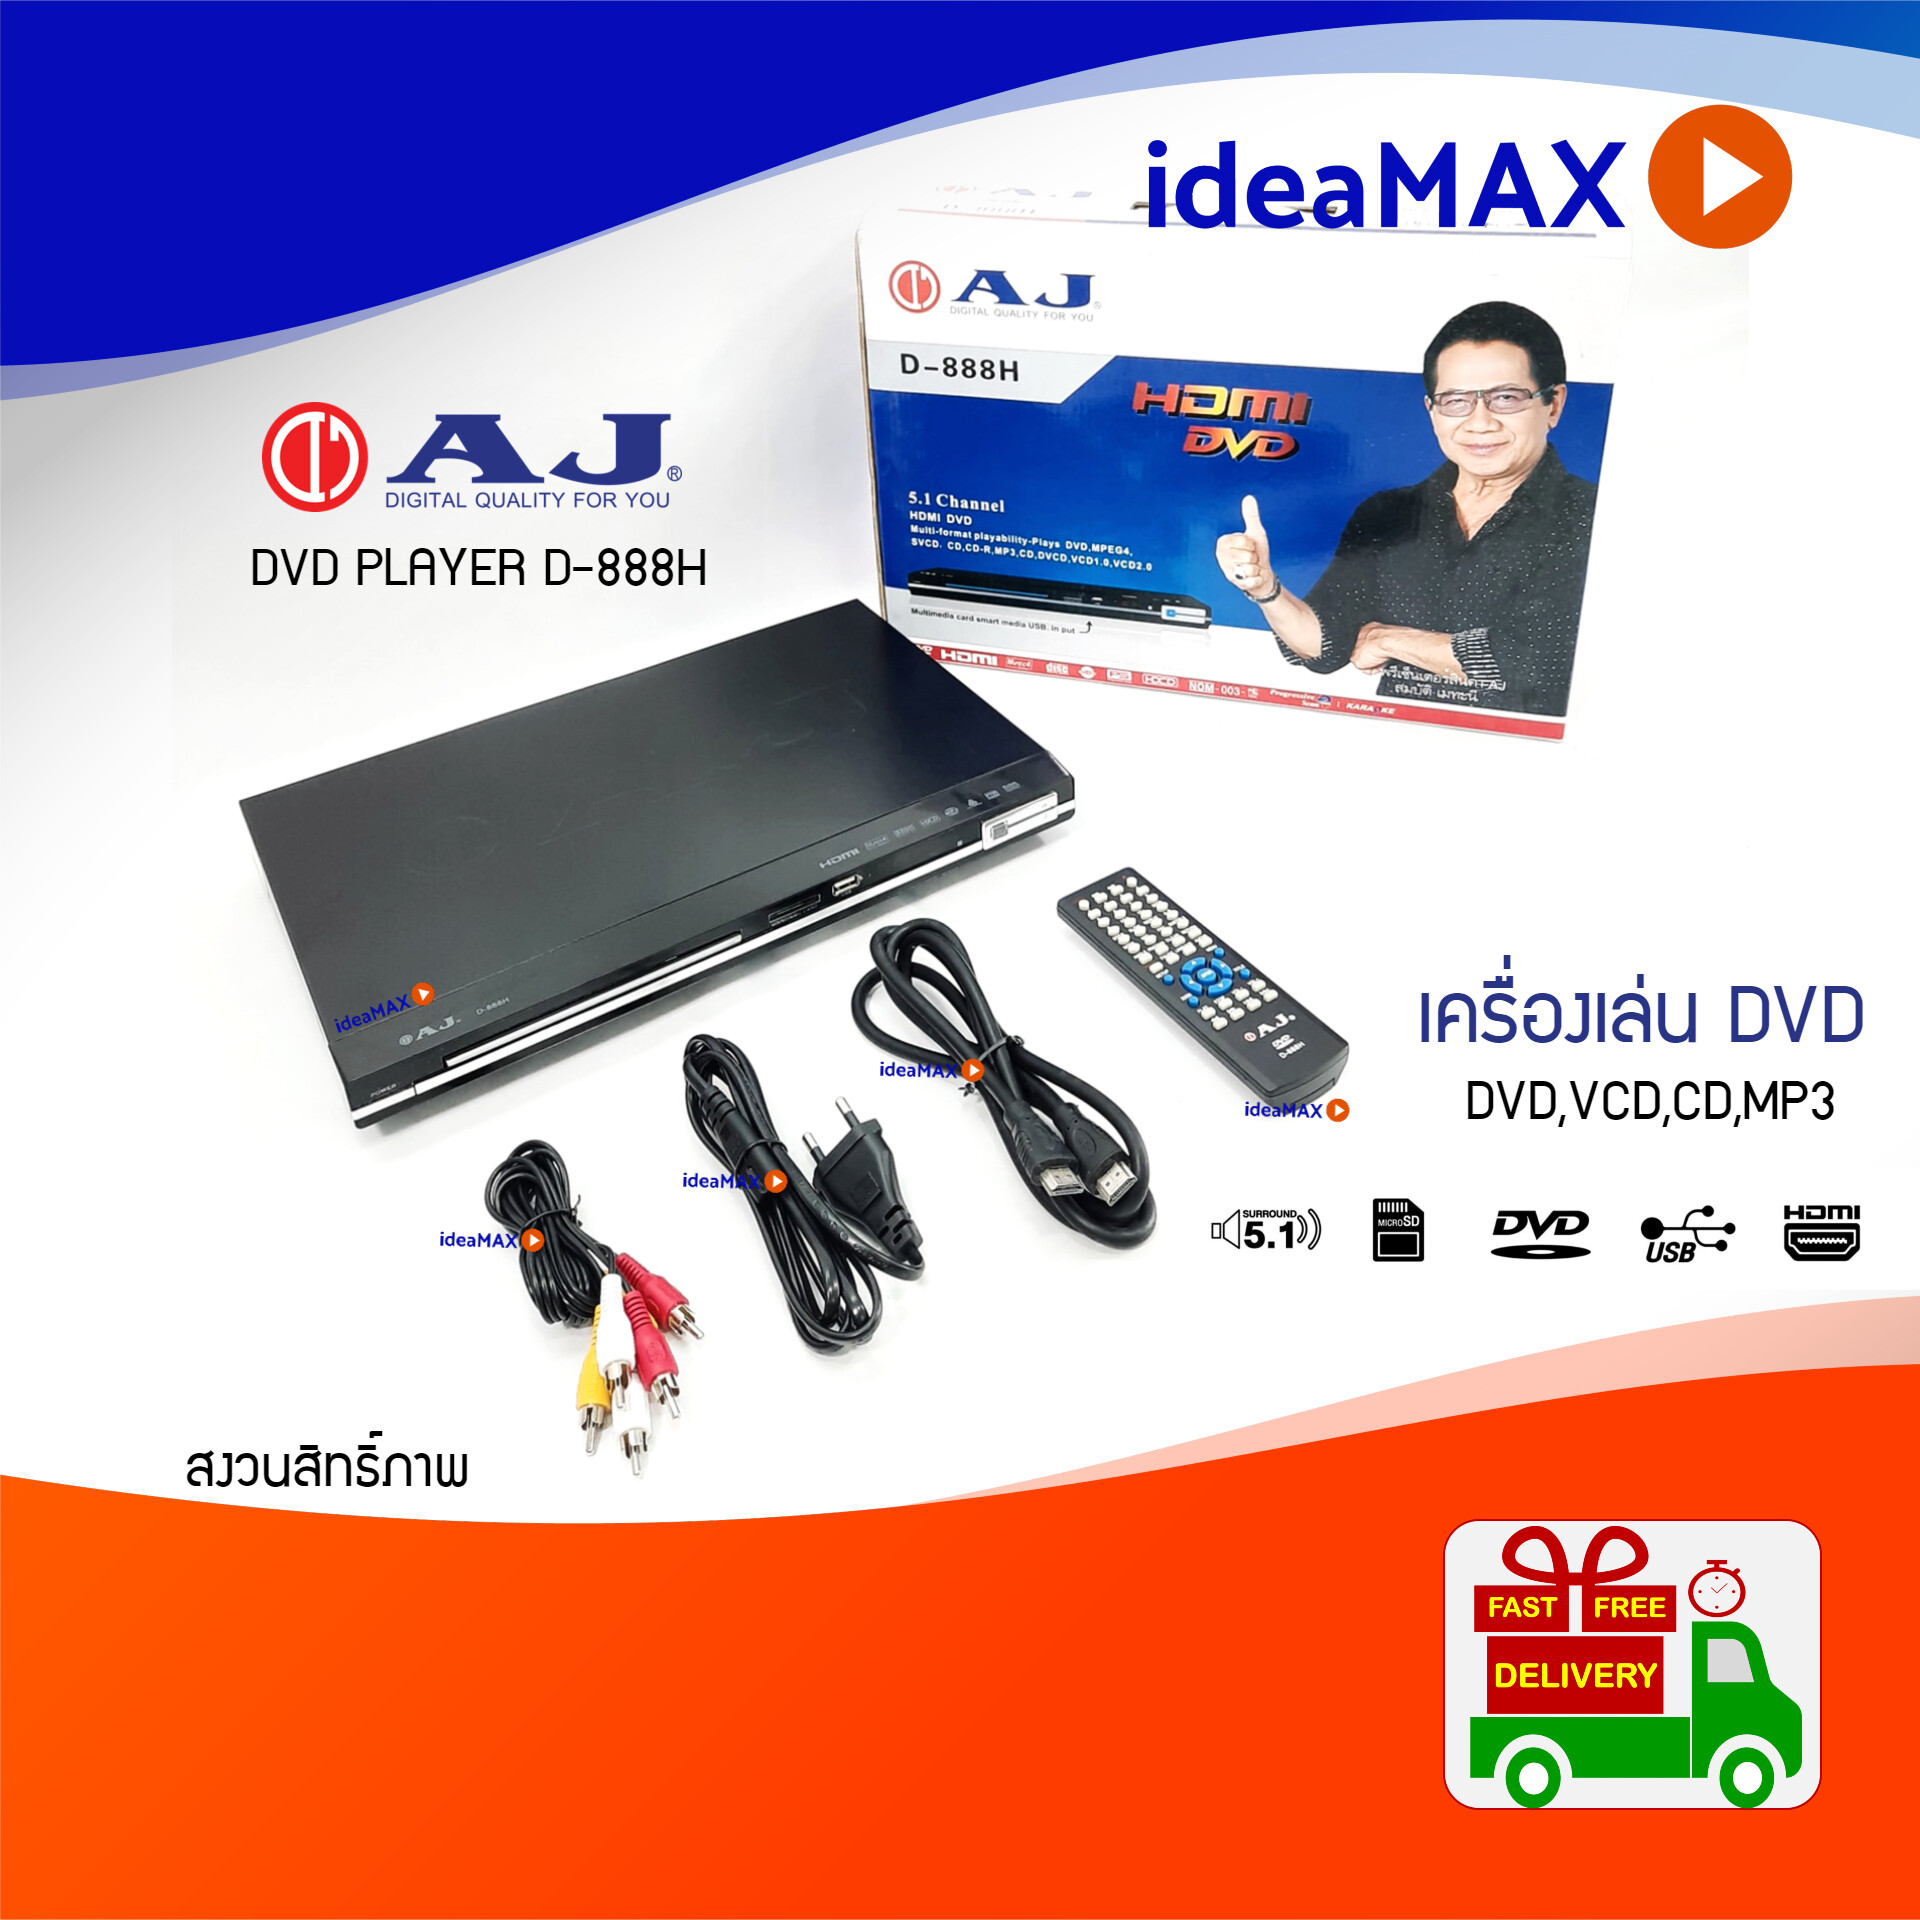 เครื่องเล่น AJ DVD รุ่น D-888HD HDMI 5.1CH SD Card Reader CD,VCD,DVD,MP3 USB,HDMIพร้อมสาย HDMI ในกล่อง